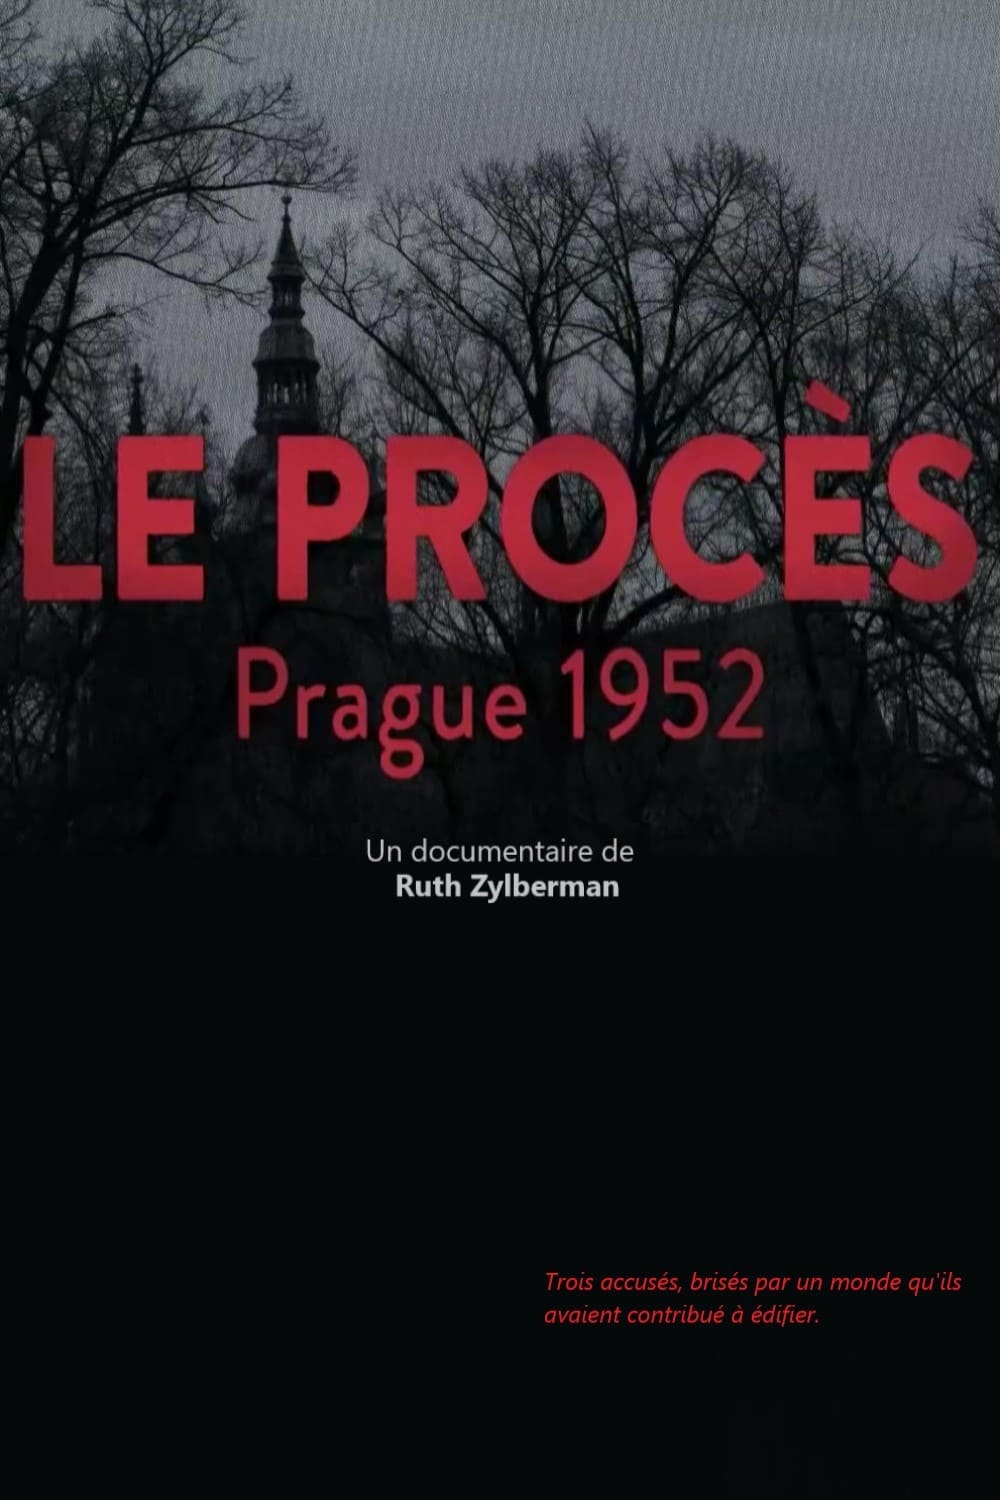 Le procès - Prague 1952